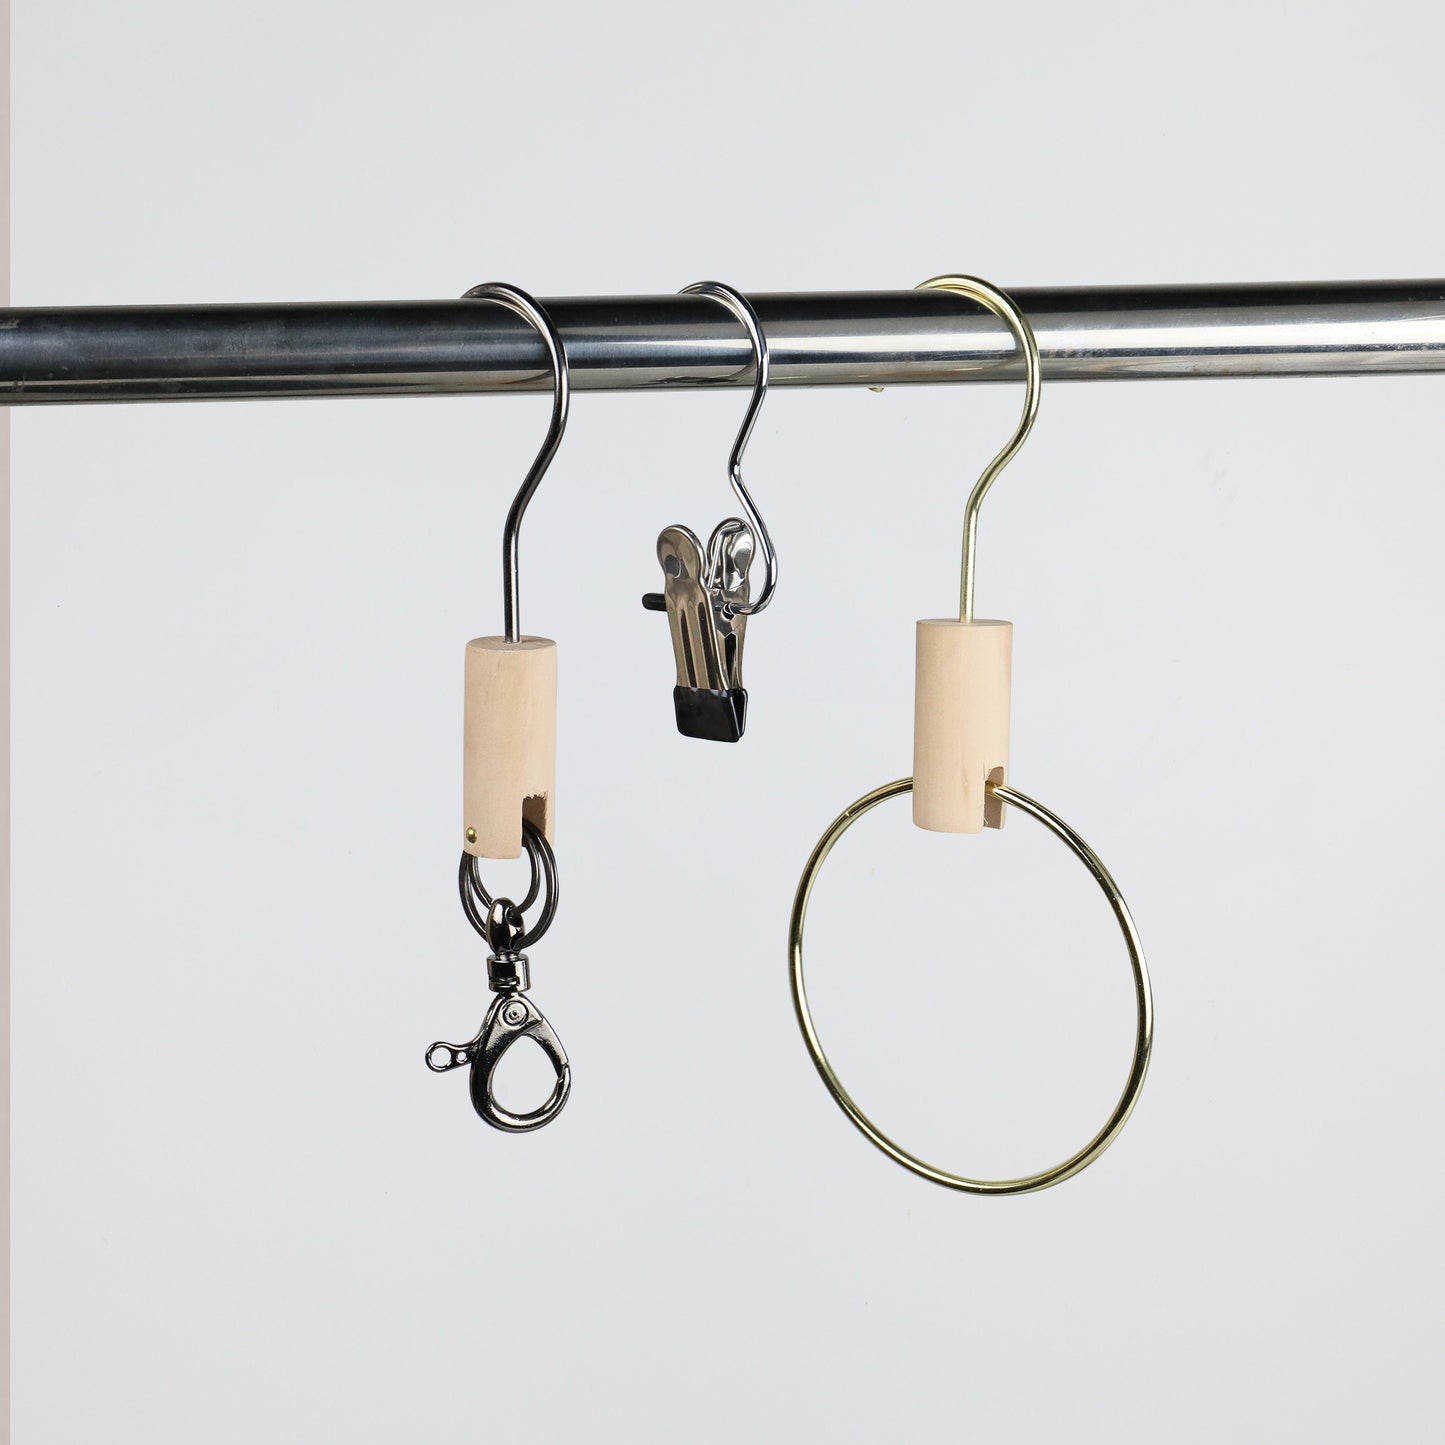 Solid Wood Metal Round Hook, Clothing Store Multifunctional Hooks for Jeans/Pants, Bathroom Towel Metal Clips,Scarf Hangers Racks Hook